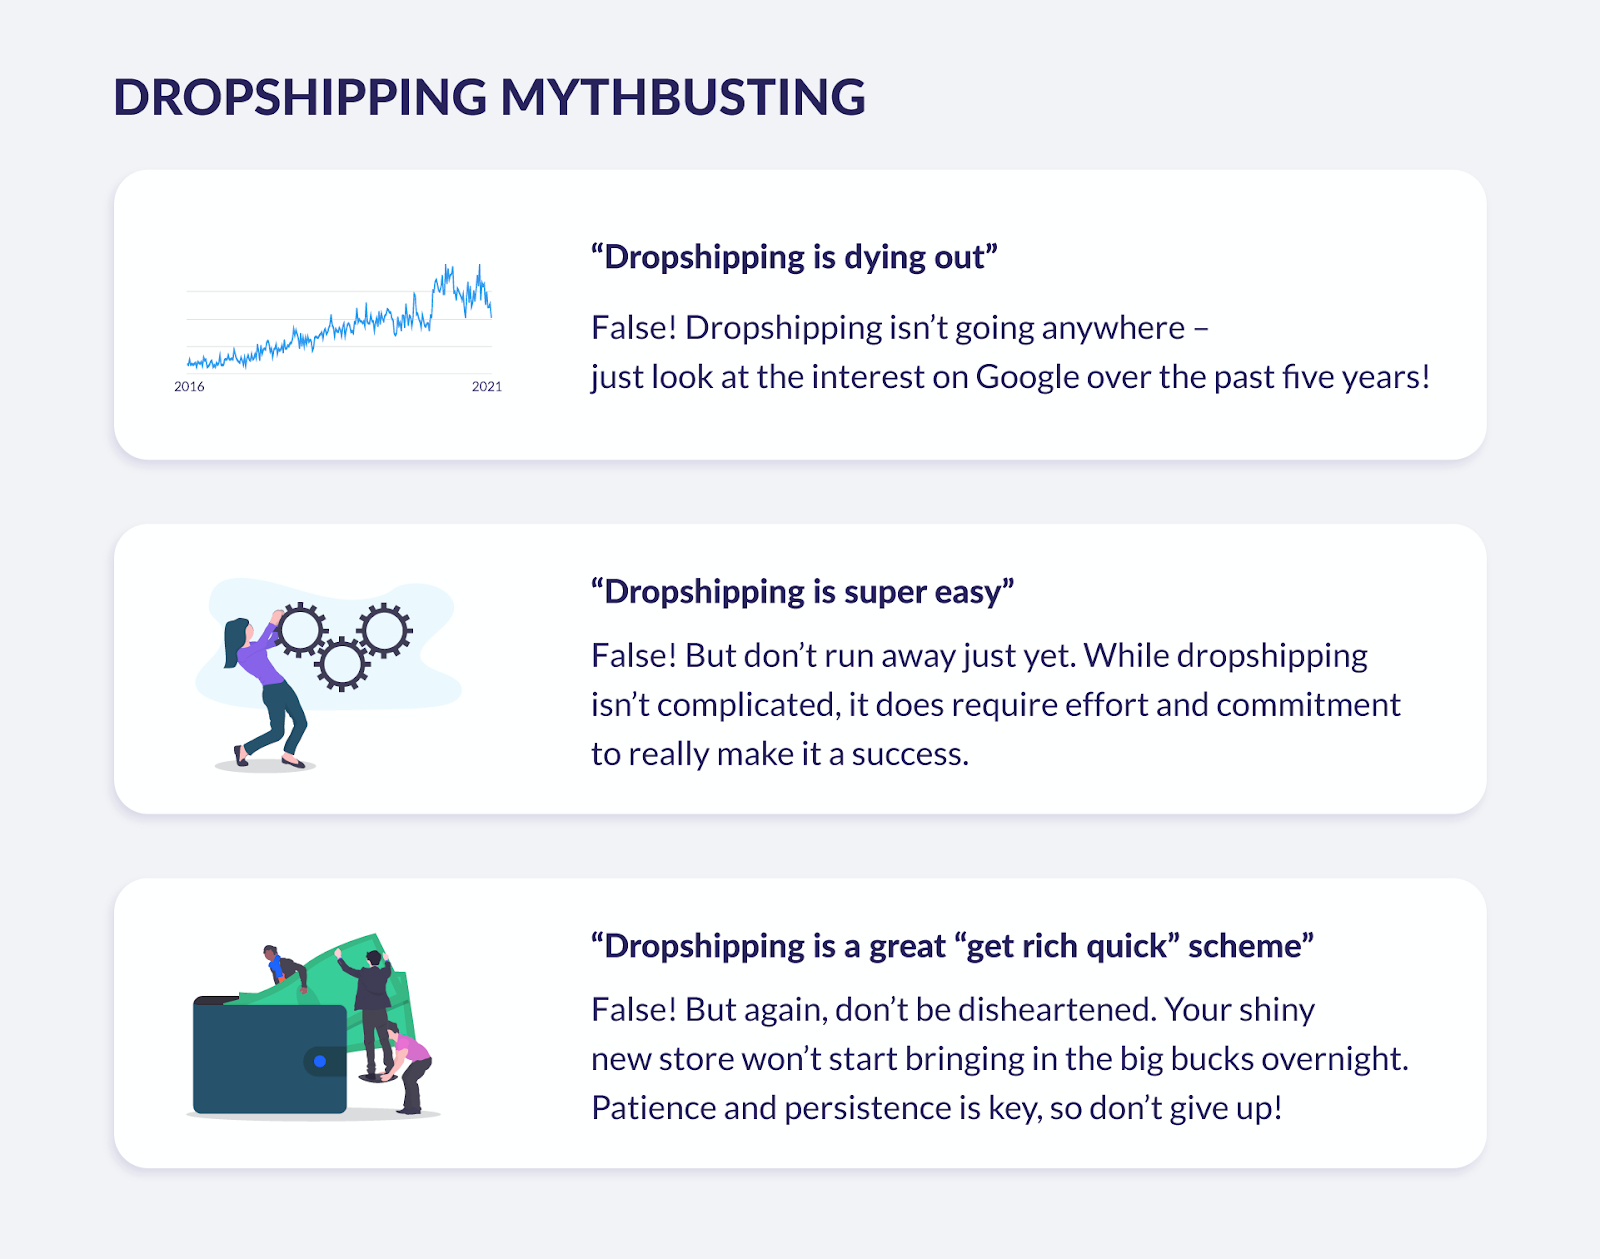 dropshipping myths debunked